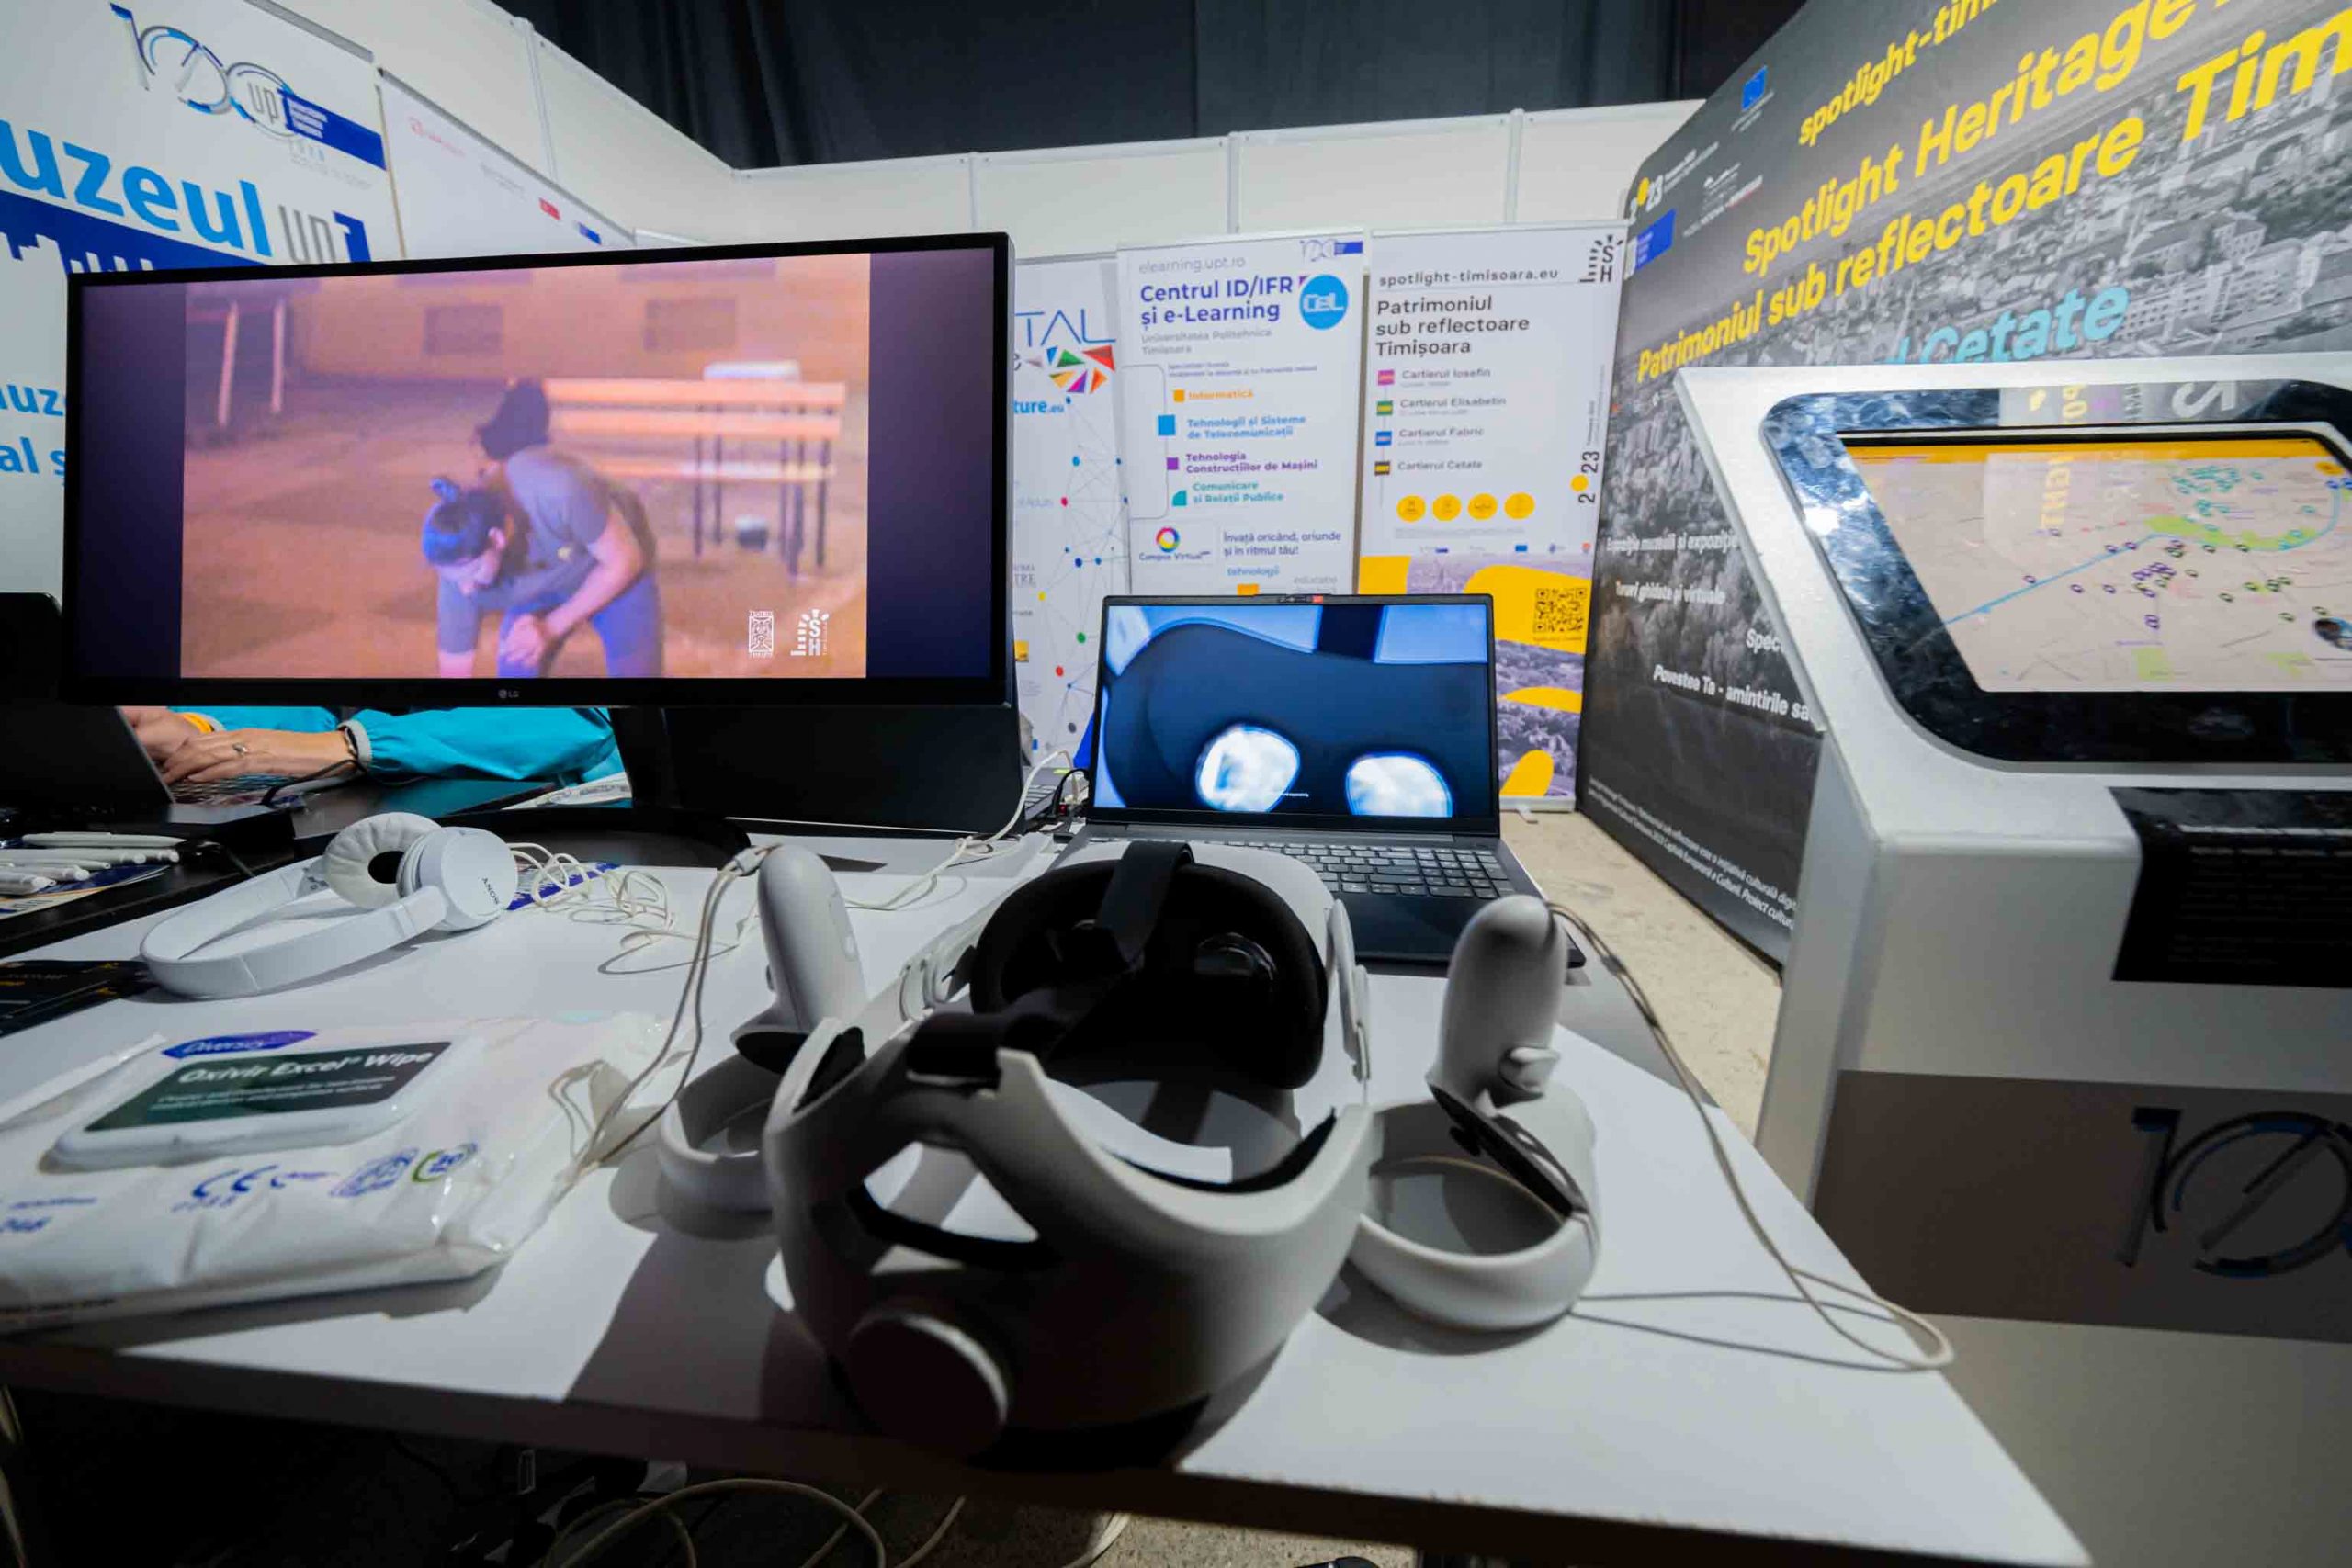 Flight Festival – Tech World: ochelari AR, VR, holograme, cuburi magice, laboratoare cu feedback senzorial și ultimele gadget-uri high-tech